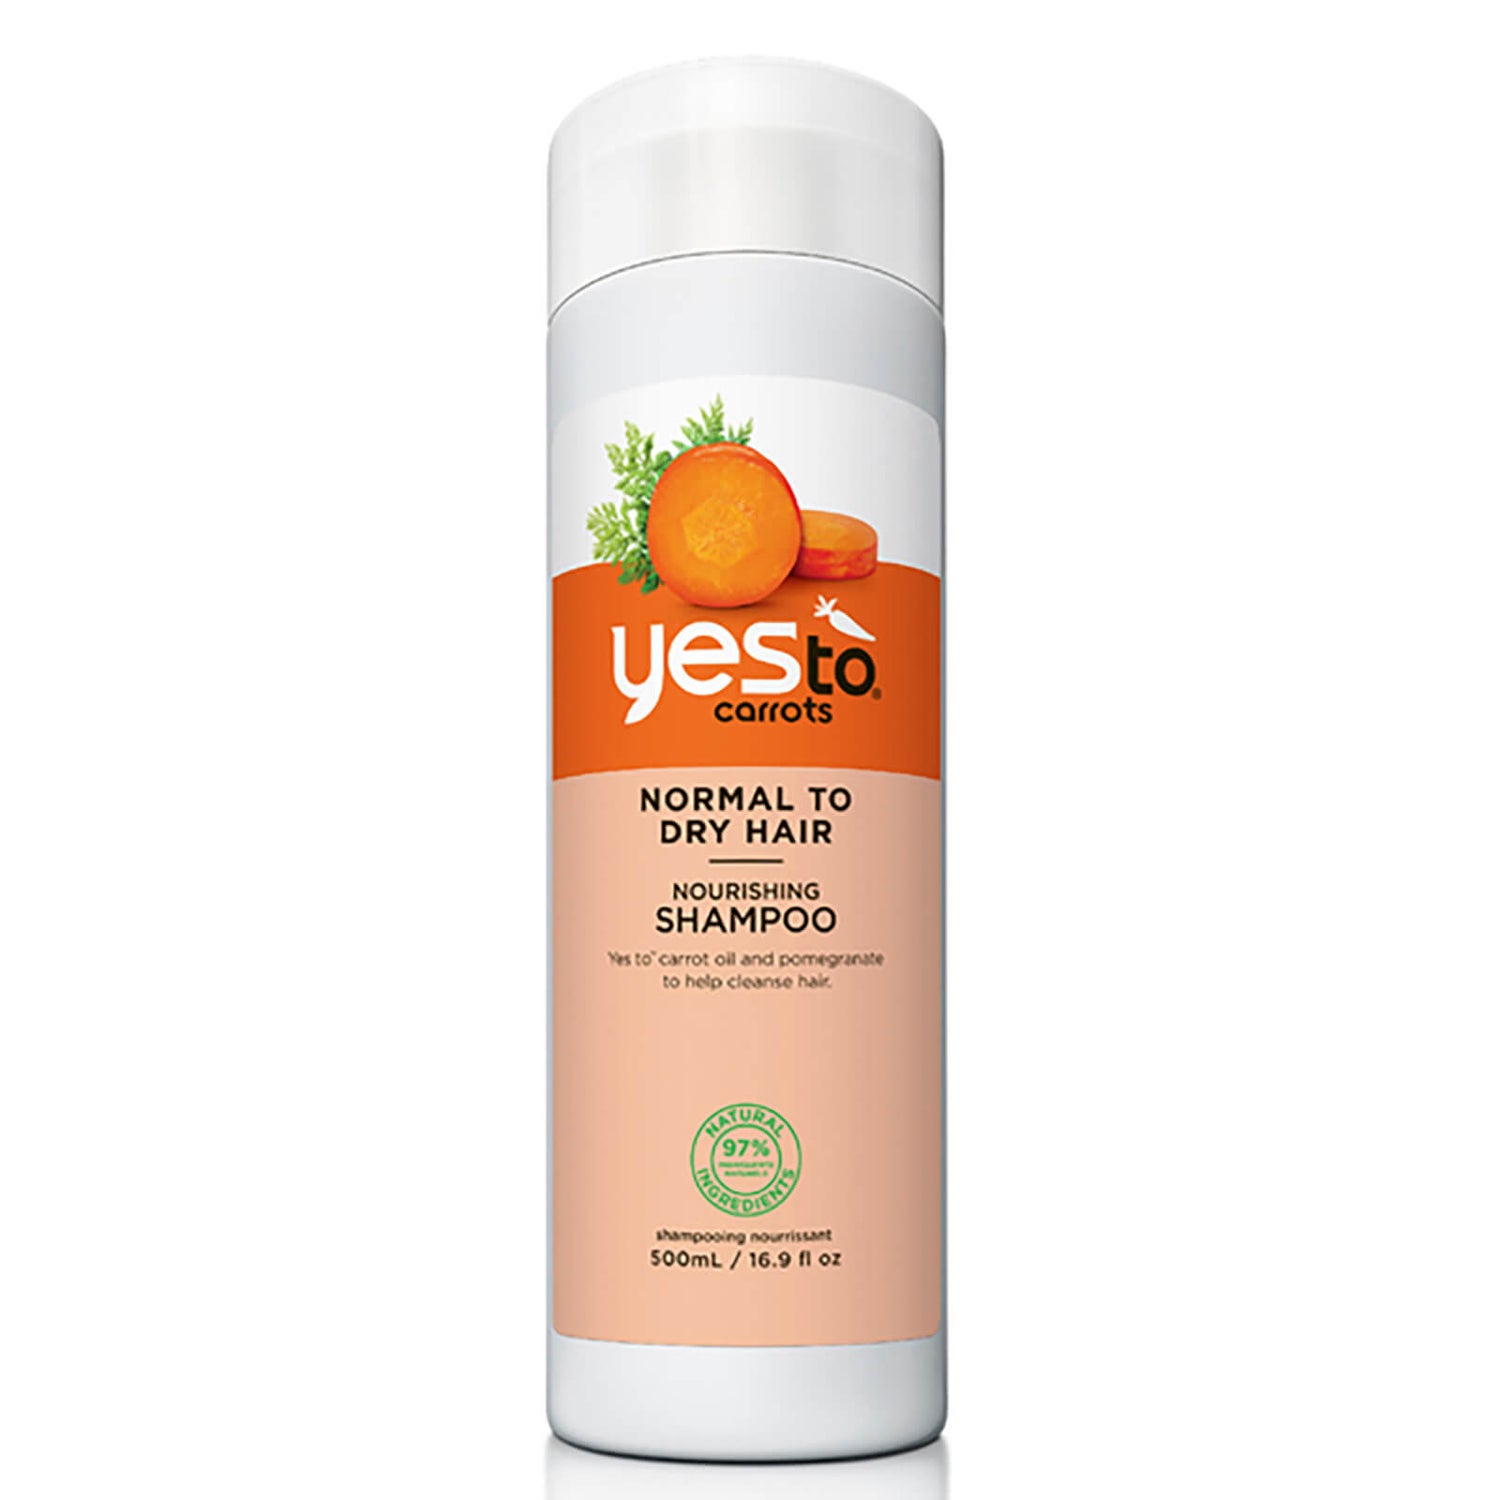 szampon yes to carrots nourishing shampoo